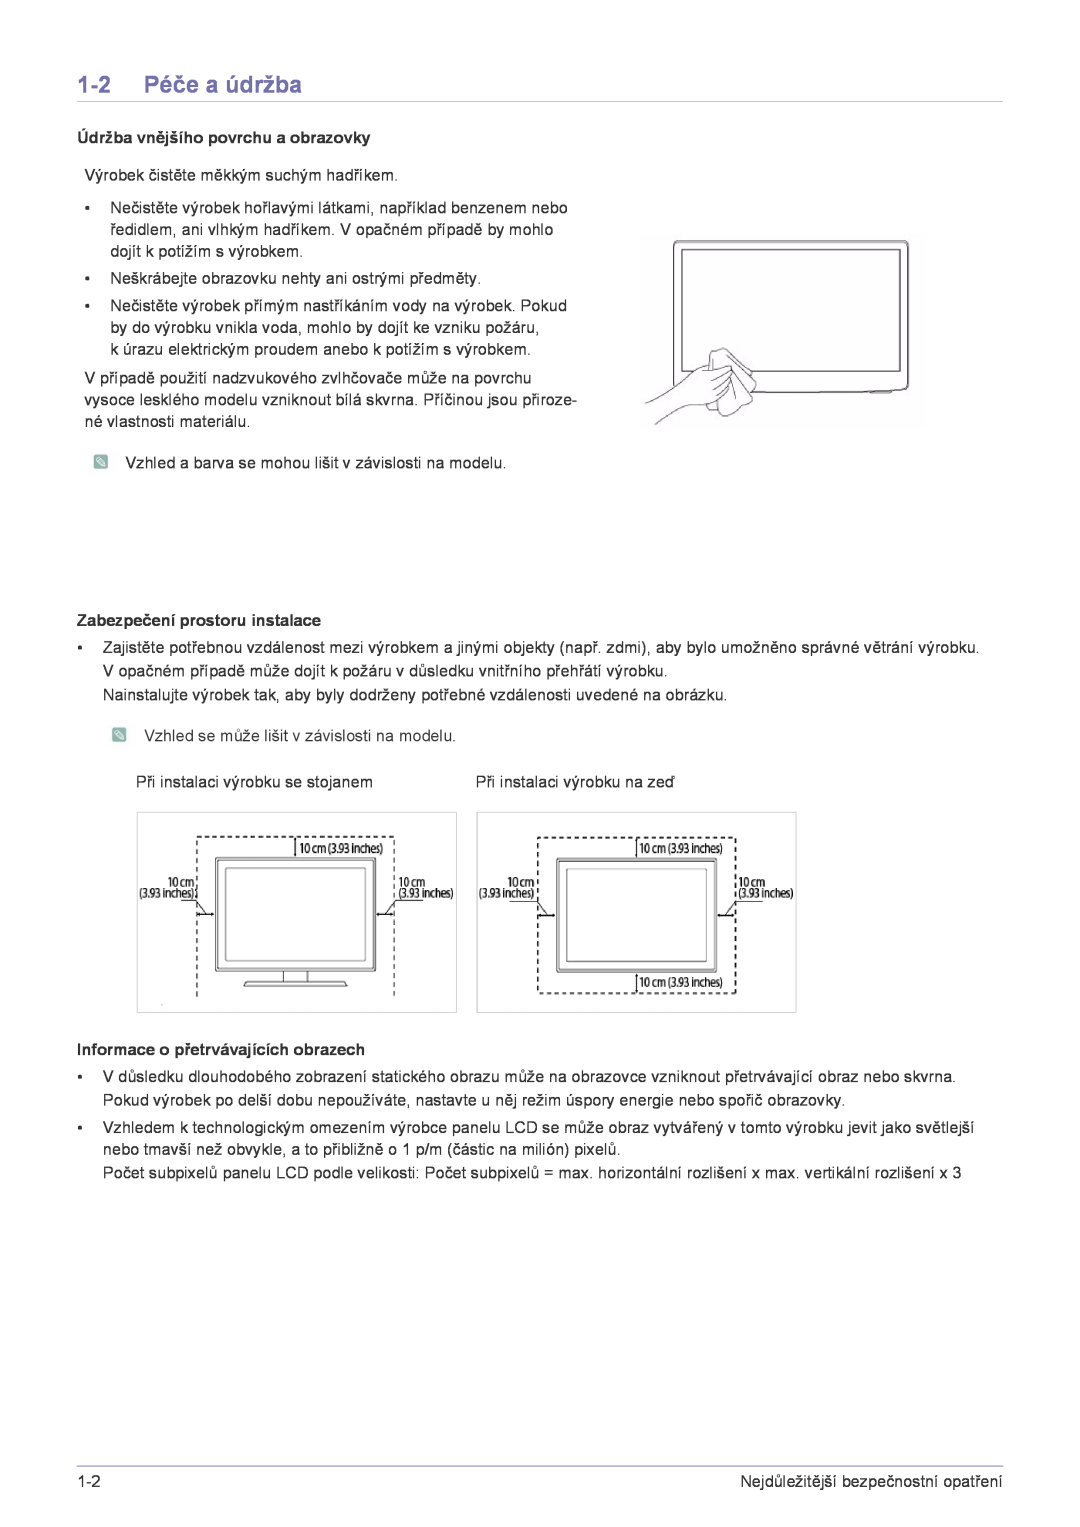 Samsung LS22FMDGF/EN manual 1-2 Péče a údržba, Údržba vnějšího povrchu a obrazovky, Zabezpečení prostoru instalace 